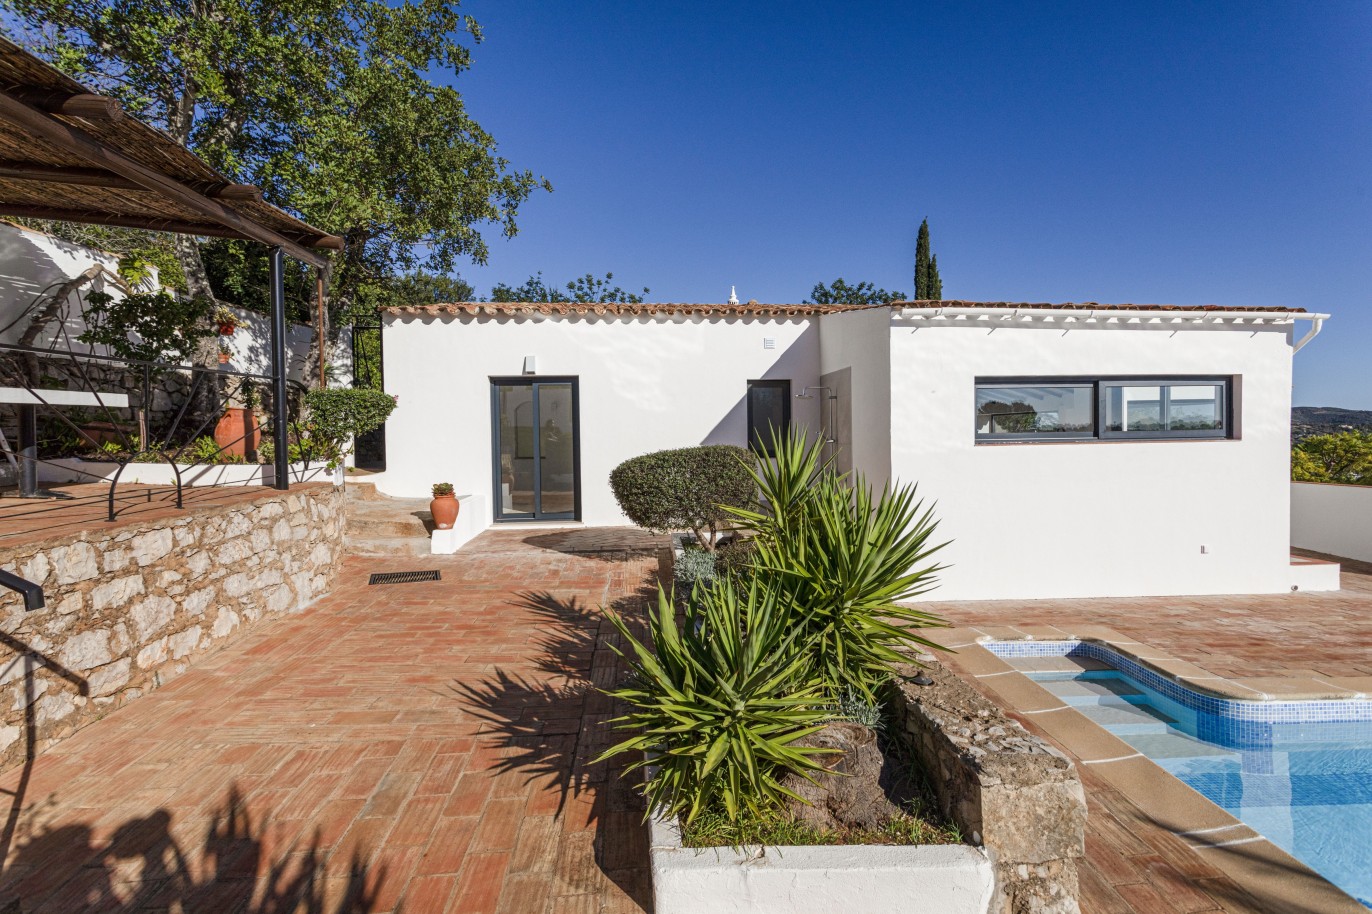 3 bedroom villa with sea view and pool, for sale in Santa Barbara, Algarve_246330